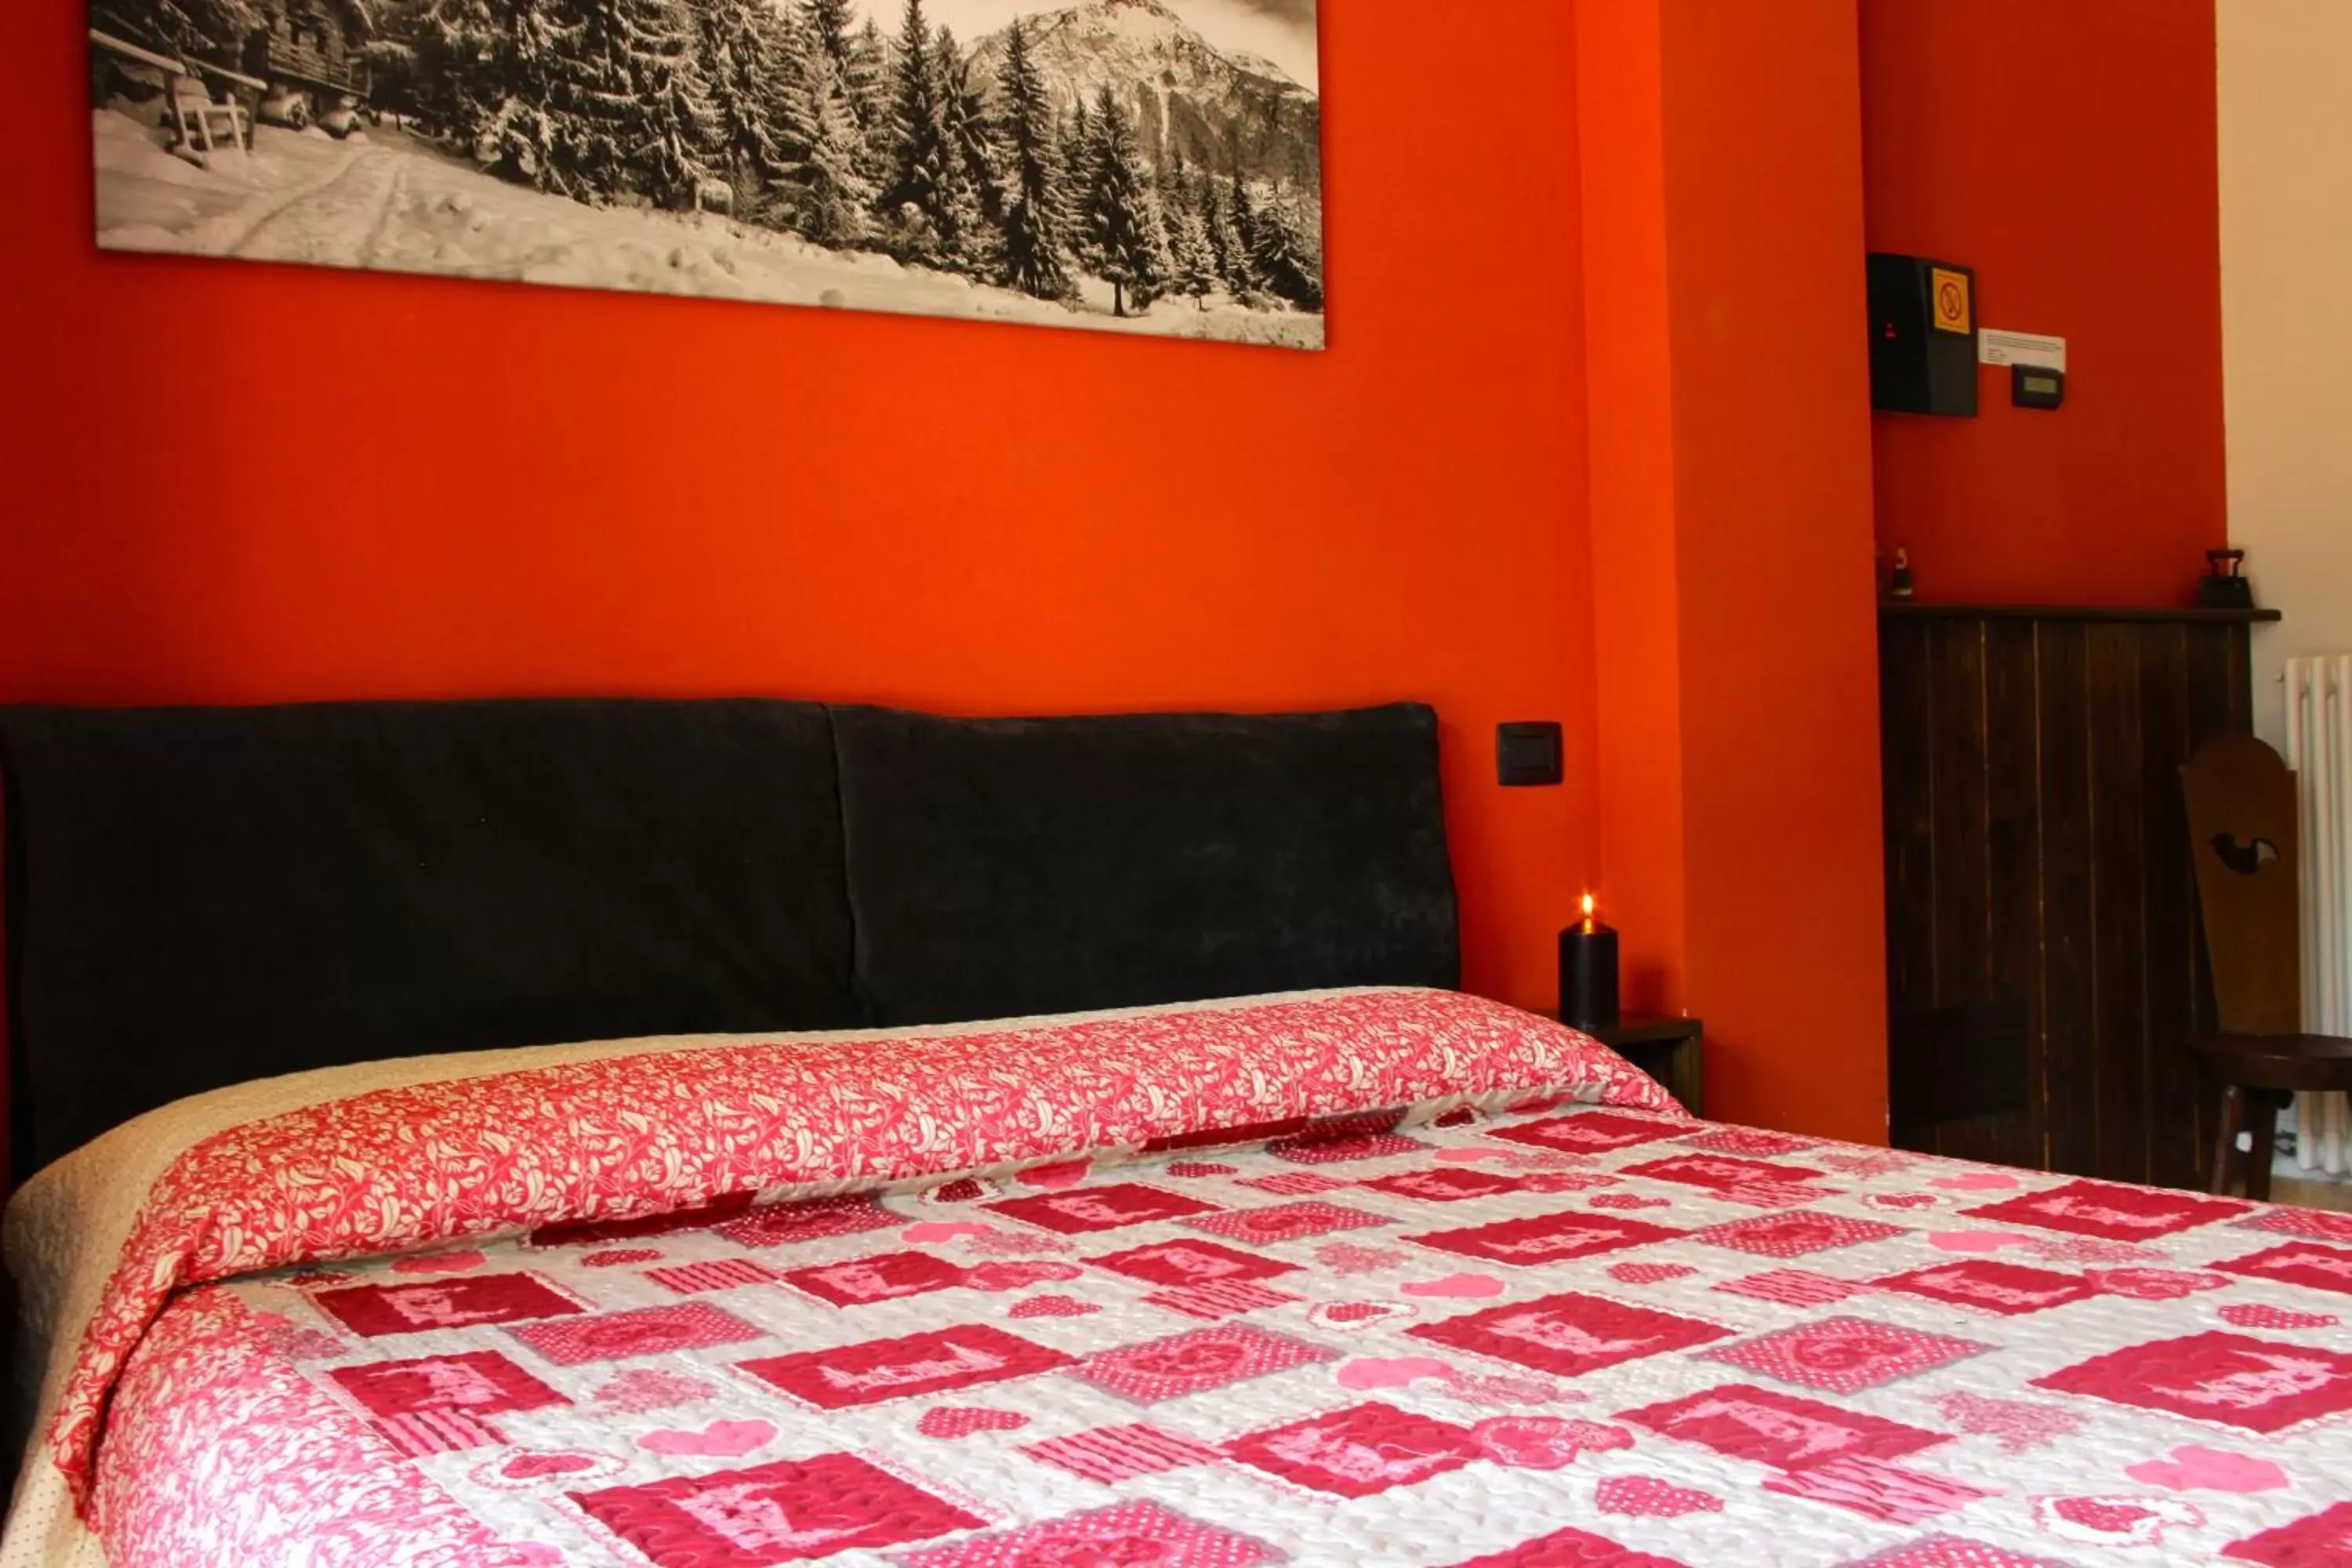 Bed, Room Photo in Case Appartamenti Vacanze Da Cien